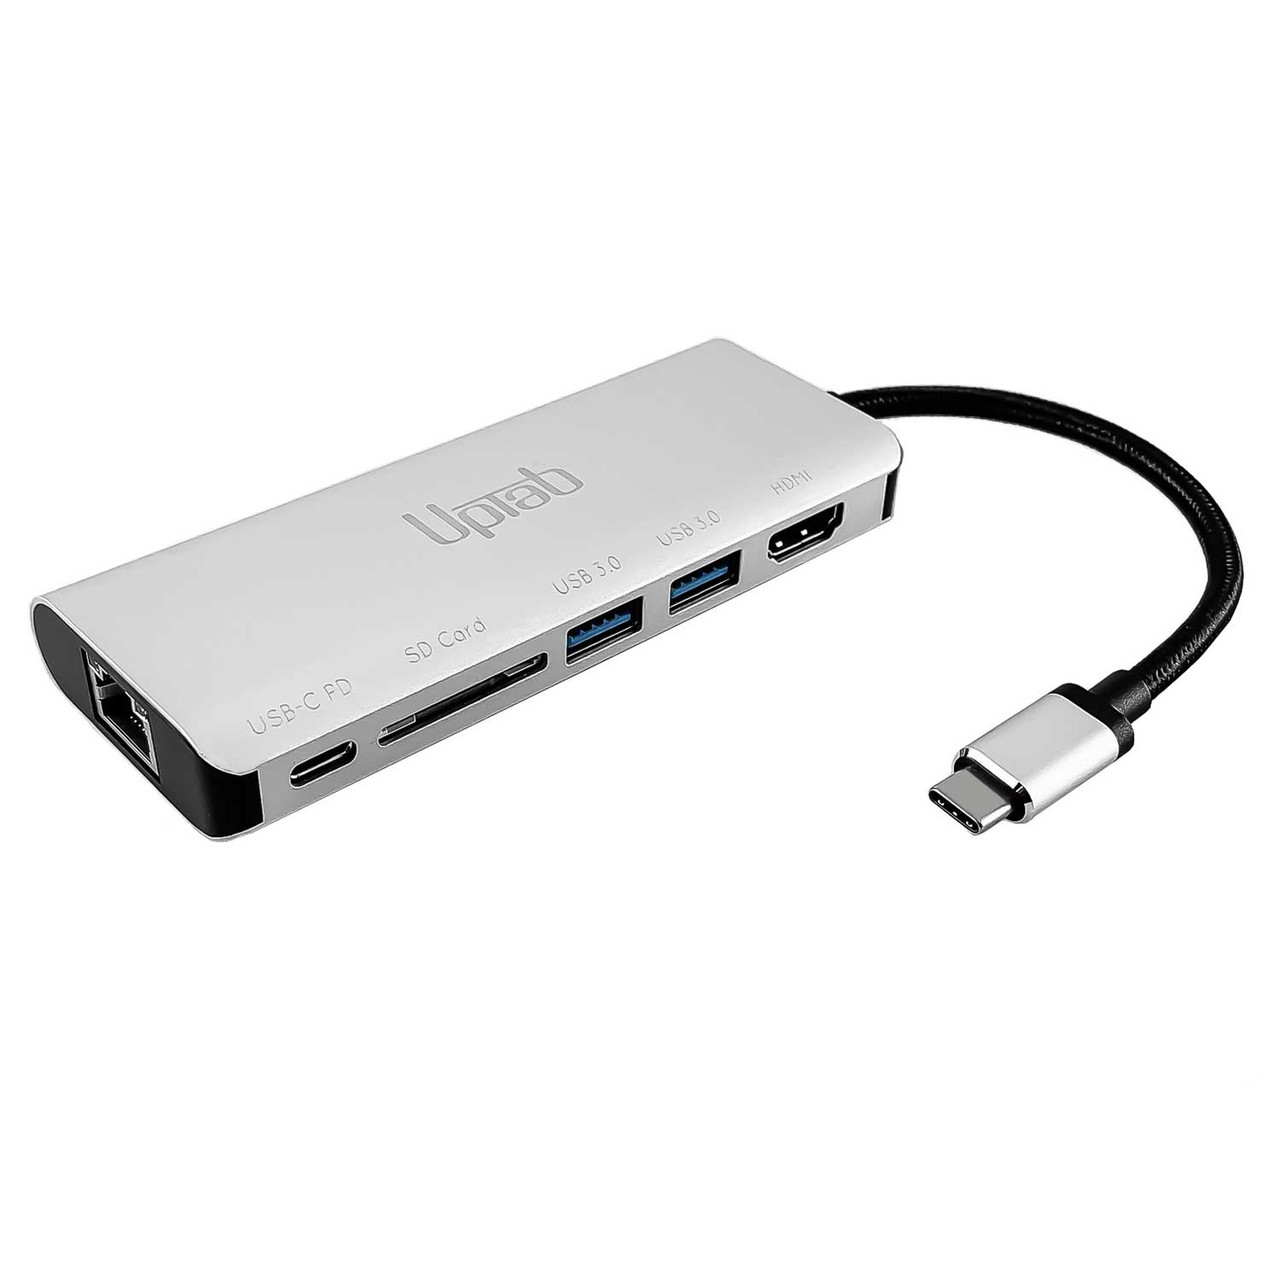 Adaptador USB C HDMI, 3 en 1 Tipo C USB 3.1 a USB-C Adaptador 4K USB 3.0 Cable  HDMI para ratón Teclado TV U Disk PC Tablet etc.